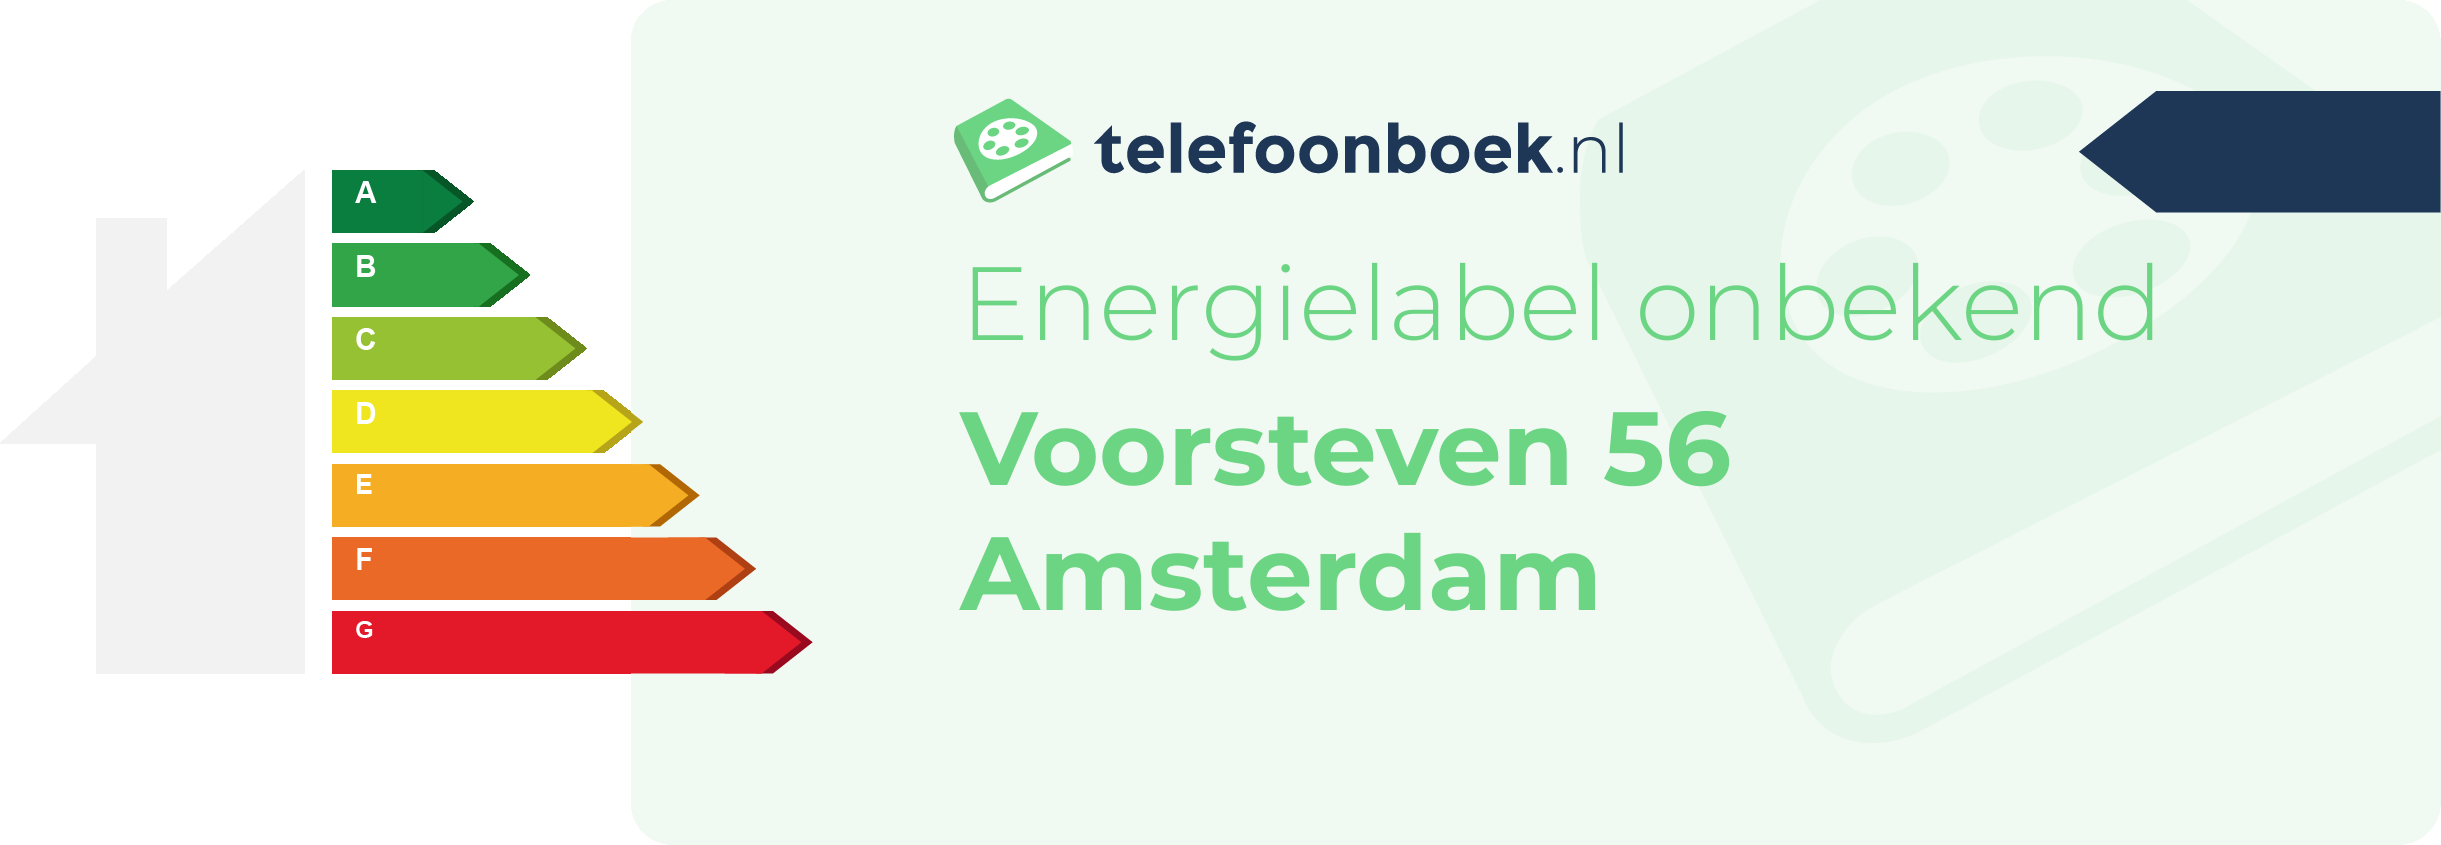 Energielabel Voorsteven 56 Amsterdam